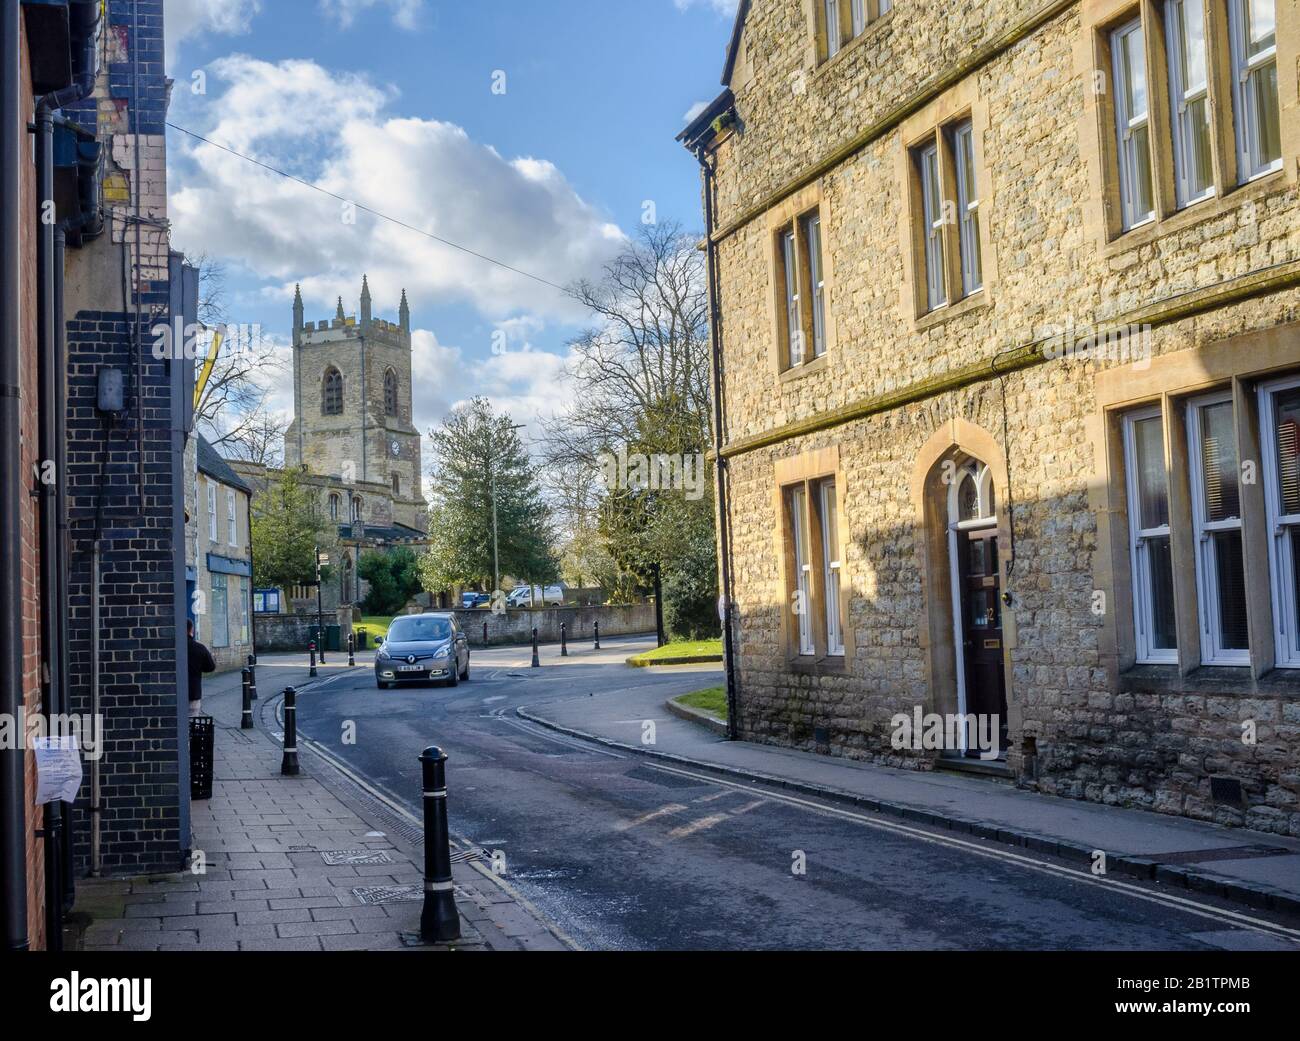 ST Edburgs Church an der Kreuzung von Church Street und Causeway, Bicester, Oxfordshire, Großbritannien. An einem sonnigen Tag, im Spätwinter, gedreht. Blaues Auto mitten auf der Straße. Stockfoto